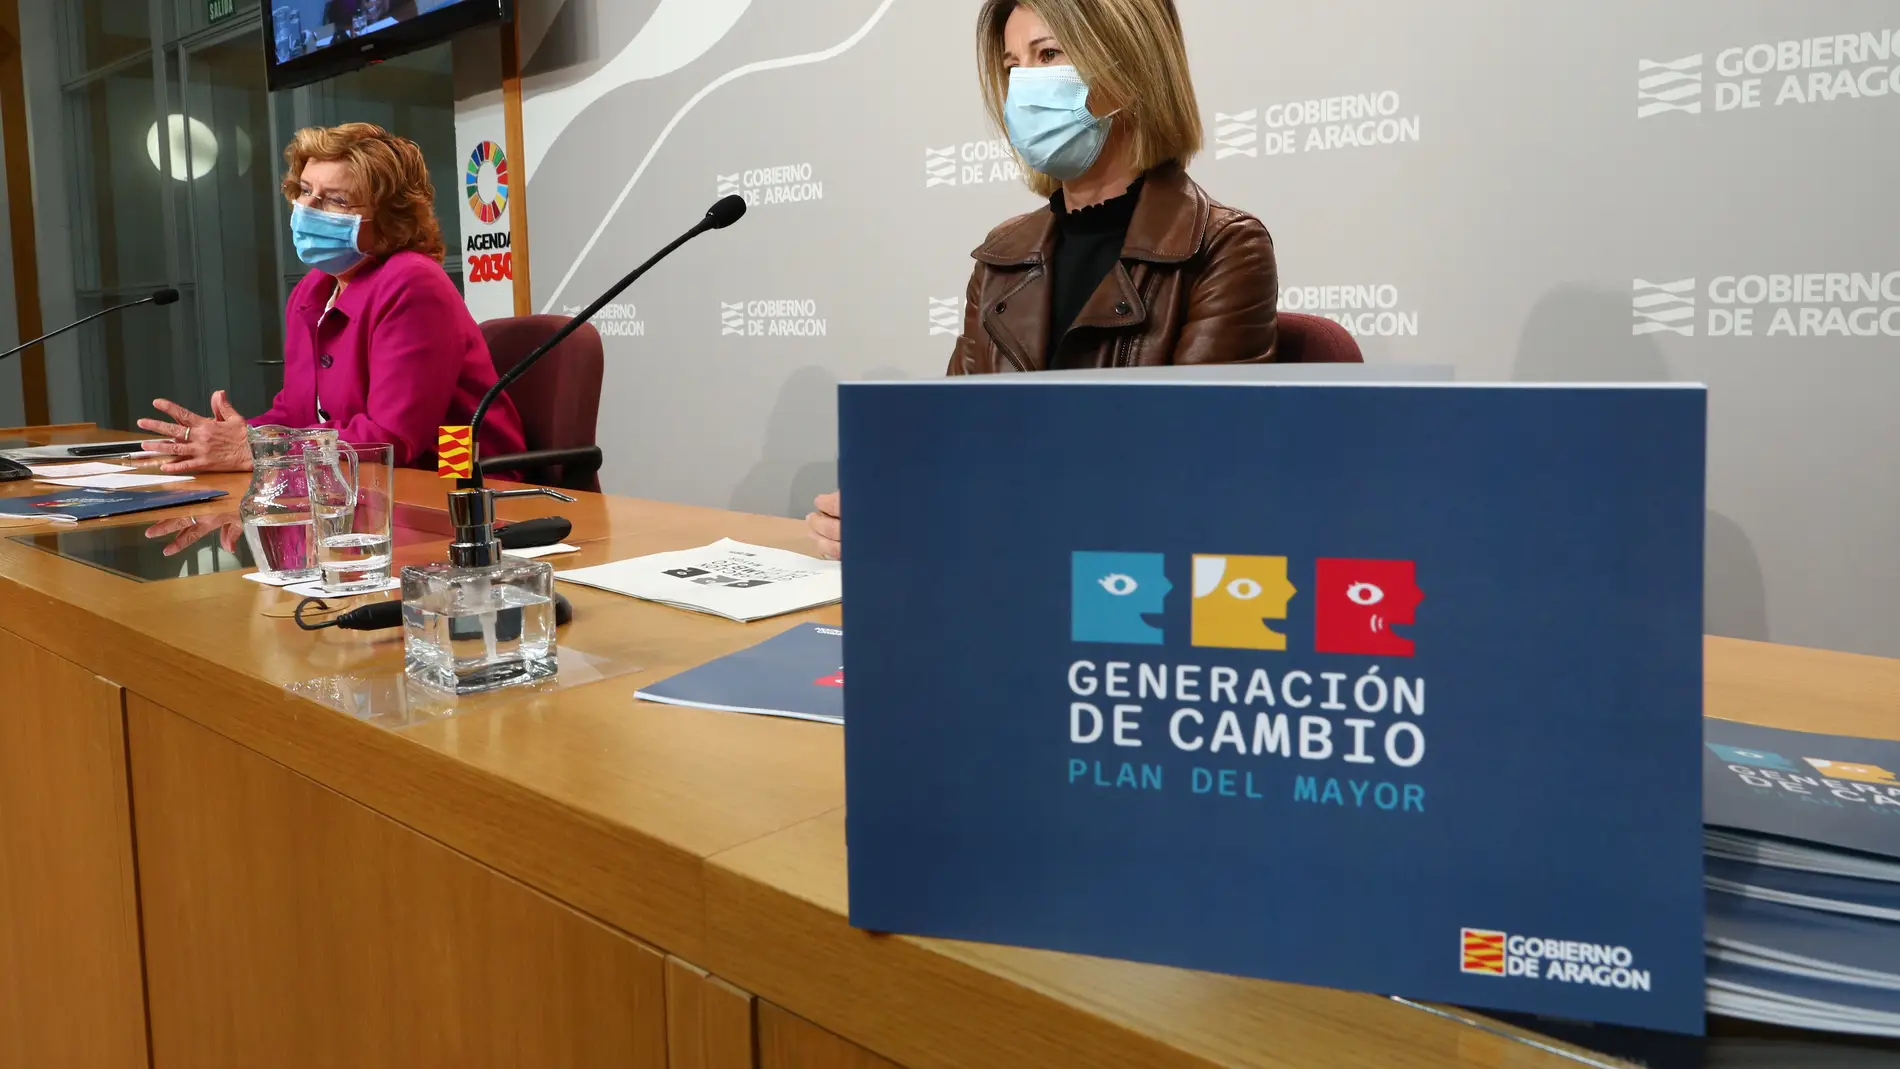 La consejera de Derechos Sociales, María Victoria Broto ha presentado el plan del Mayor 